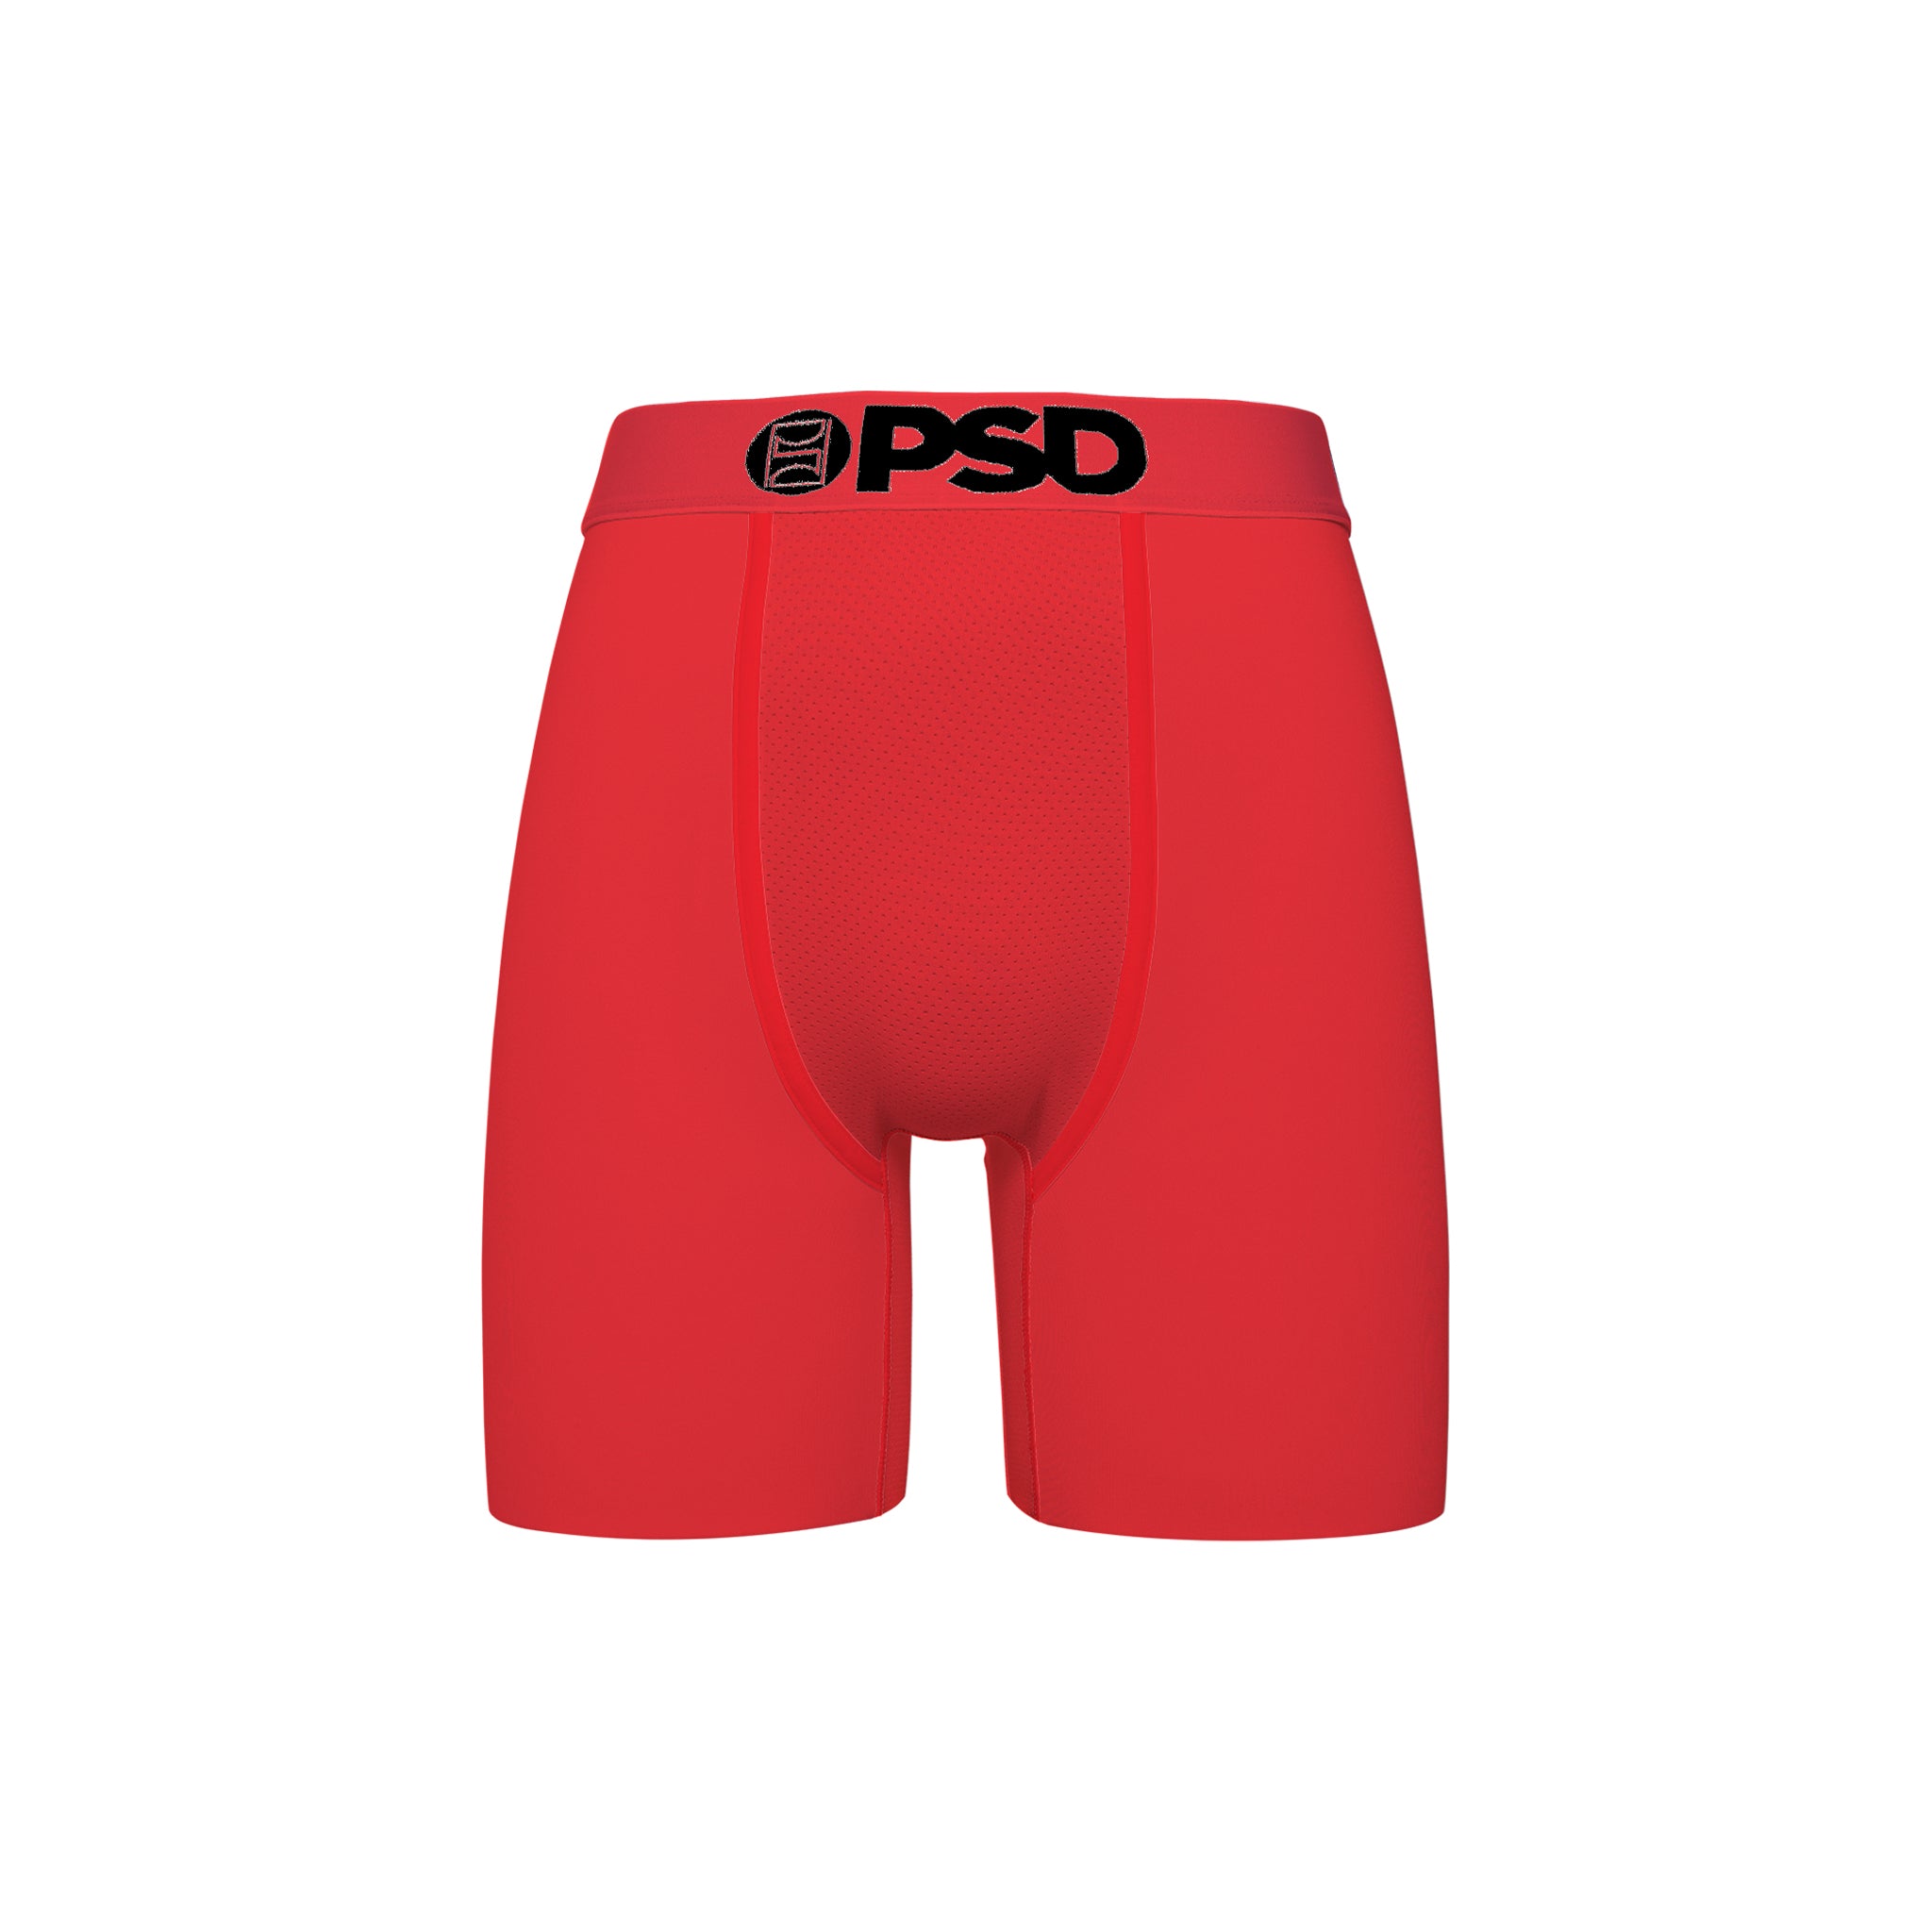 PSD "Infrared SLD" Underwear